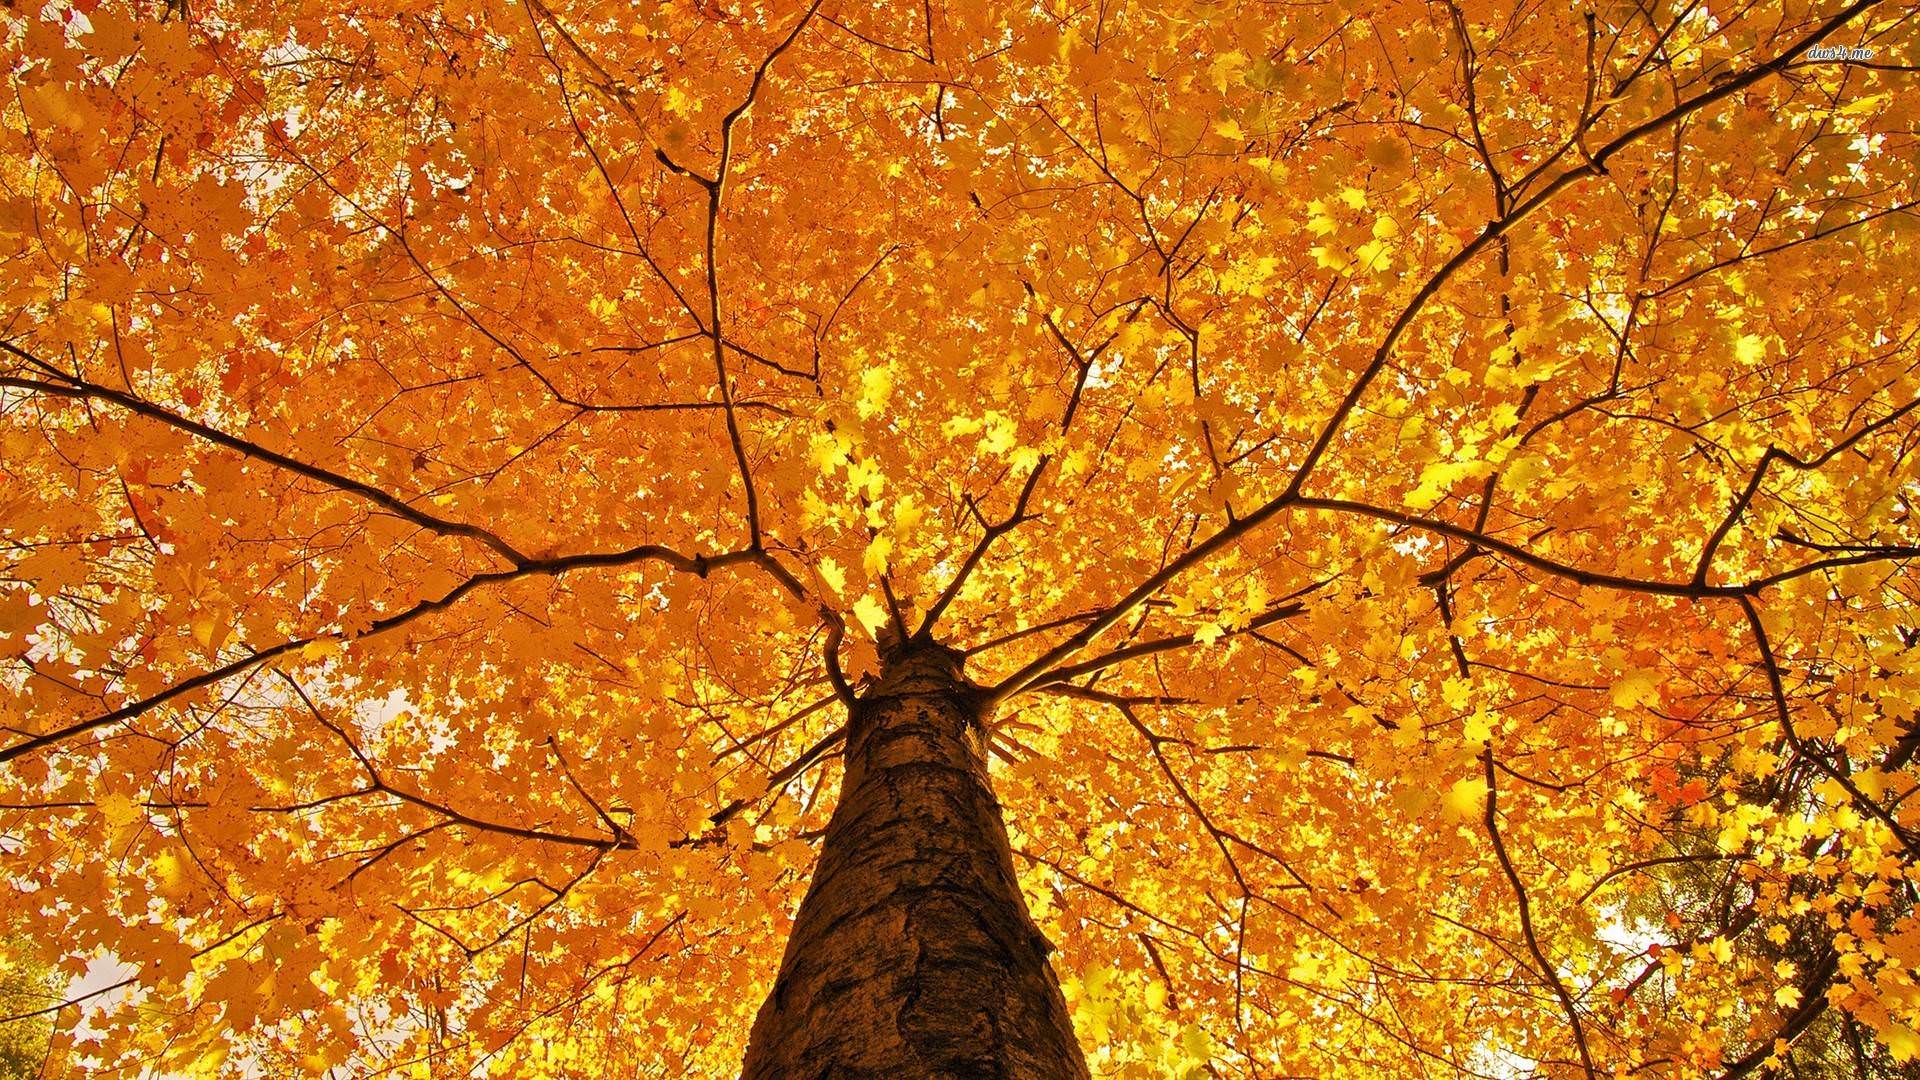 Hình nền HD 1920x1080 Autumn Tree.  Hình nền HD mới nhất